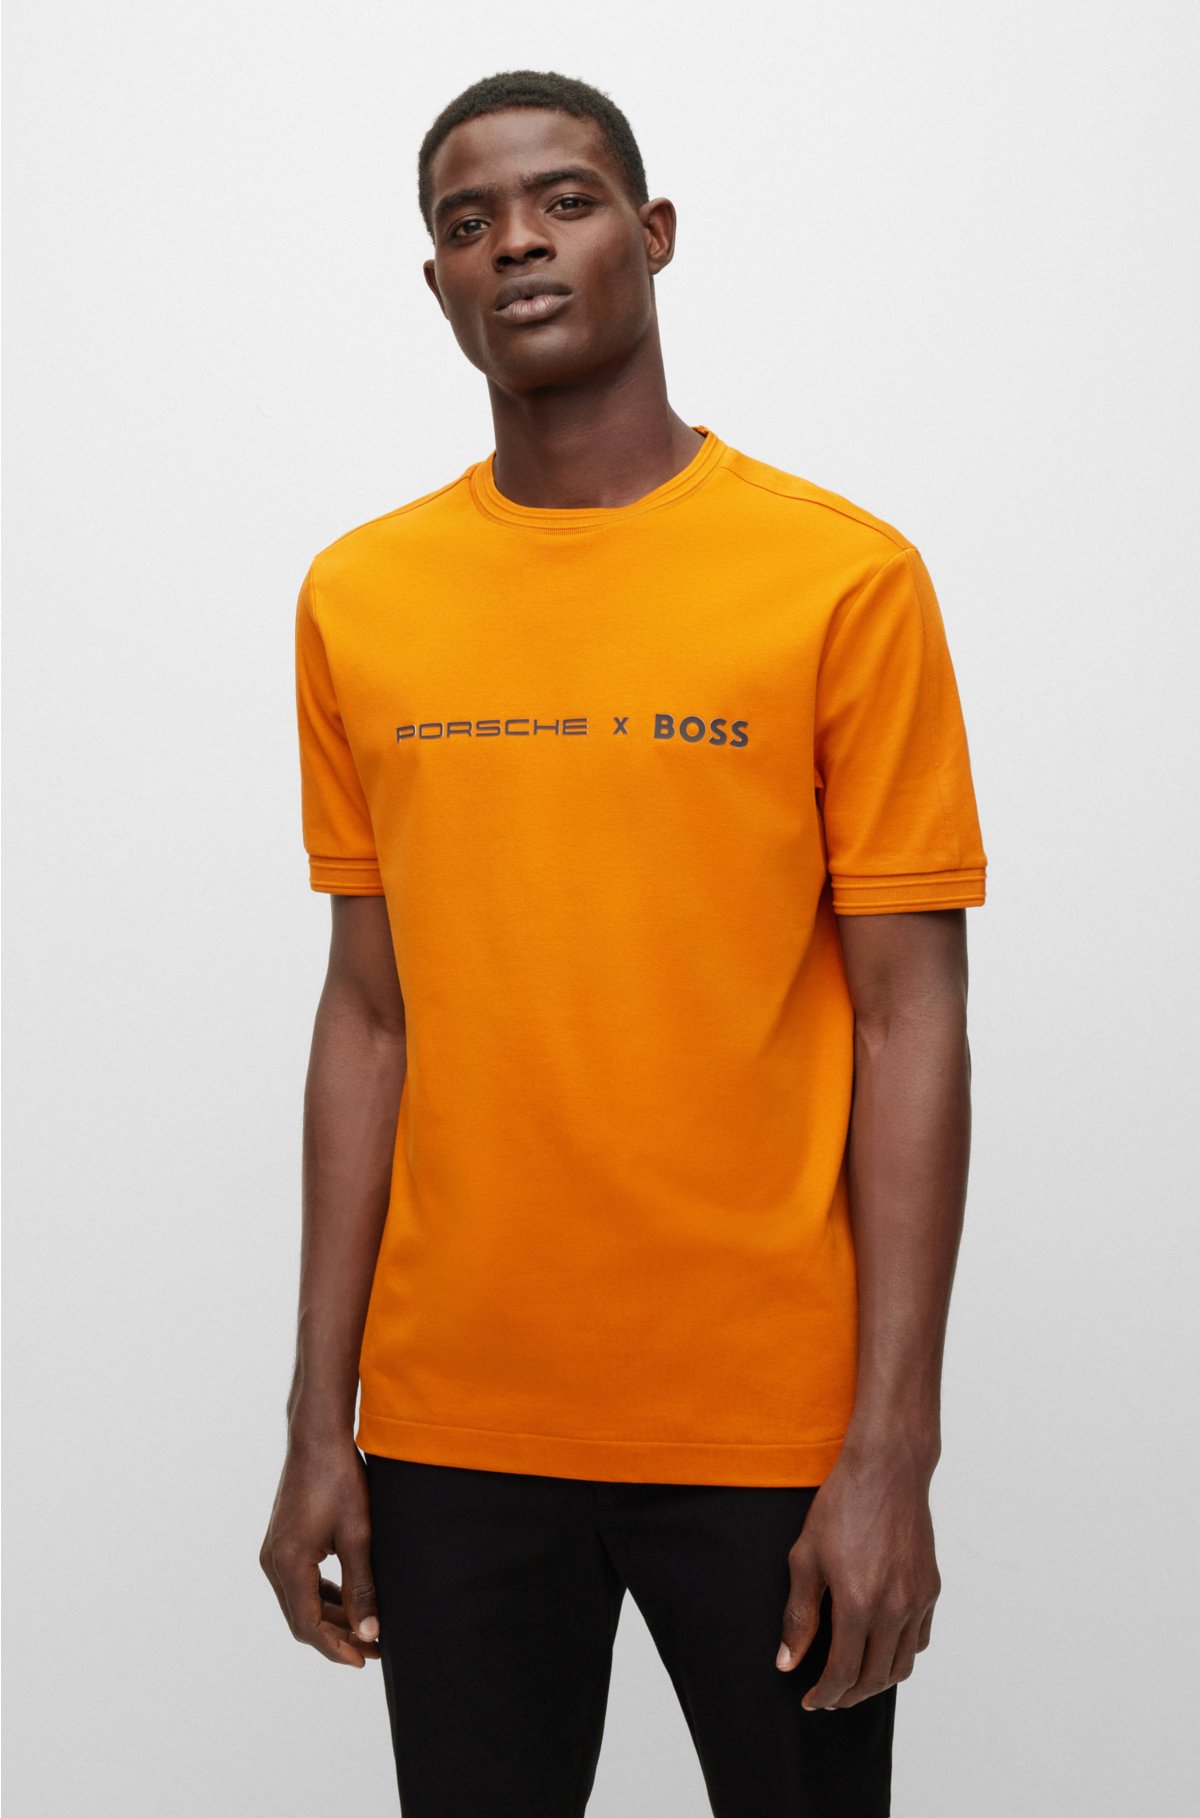 BOSS - exclusive BOSS slim-fit branding with T-shirt Porsche x